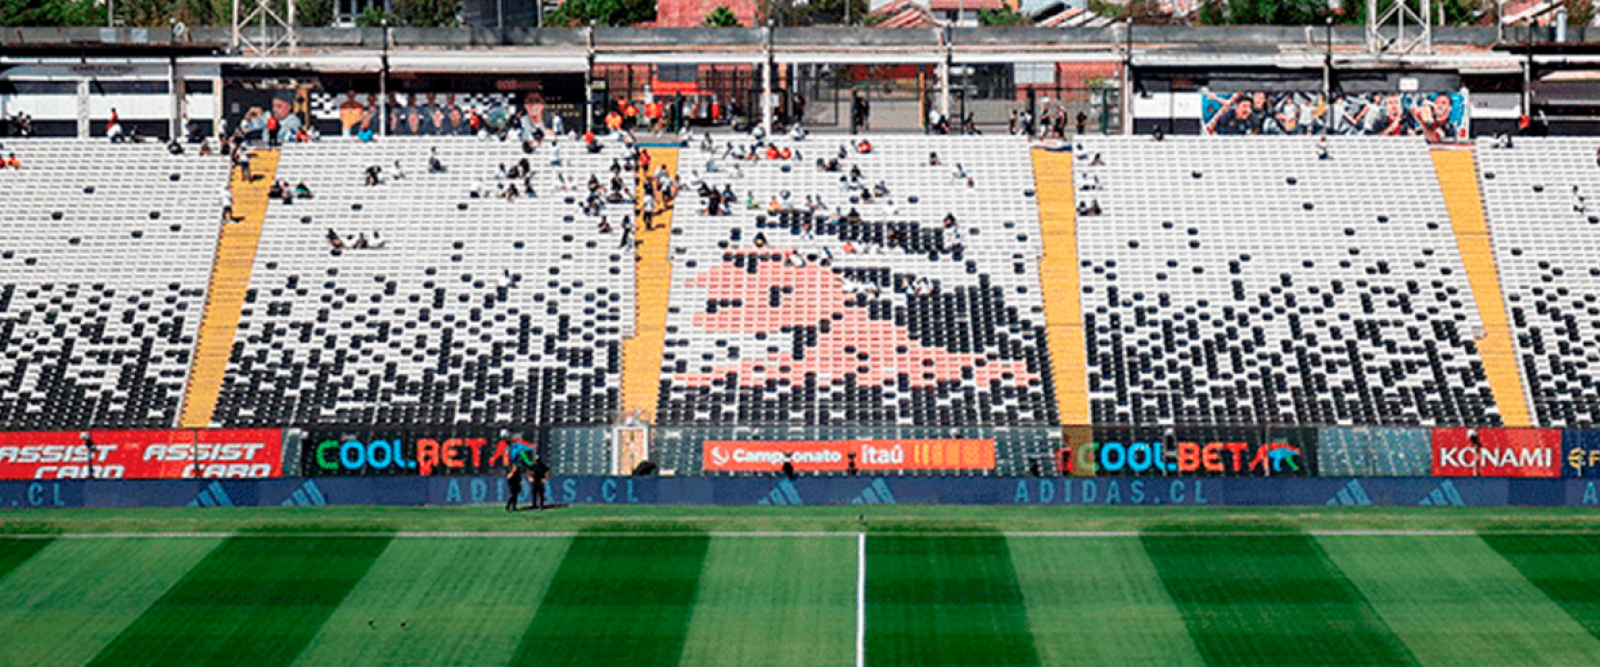 Colo Colo celebra su aniversario y anuncia remodelación del Estadio Monumental